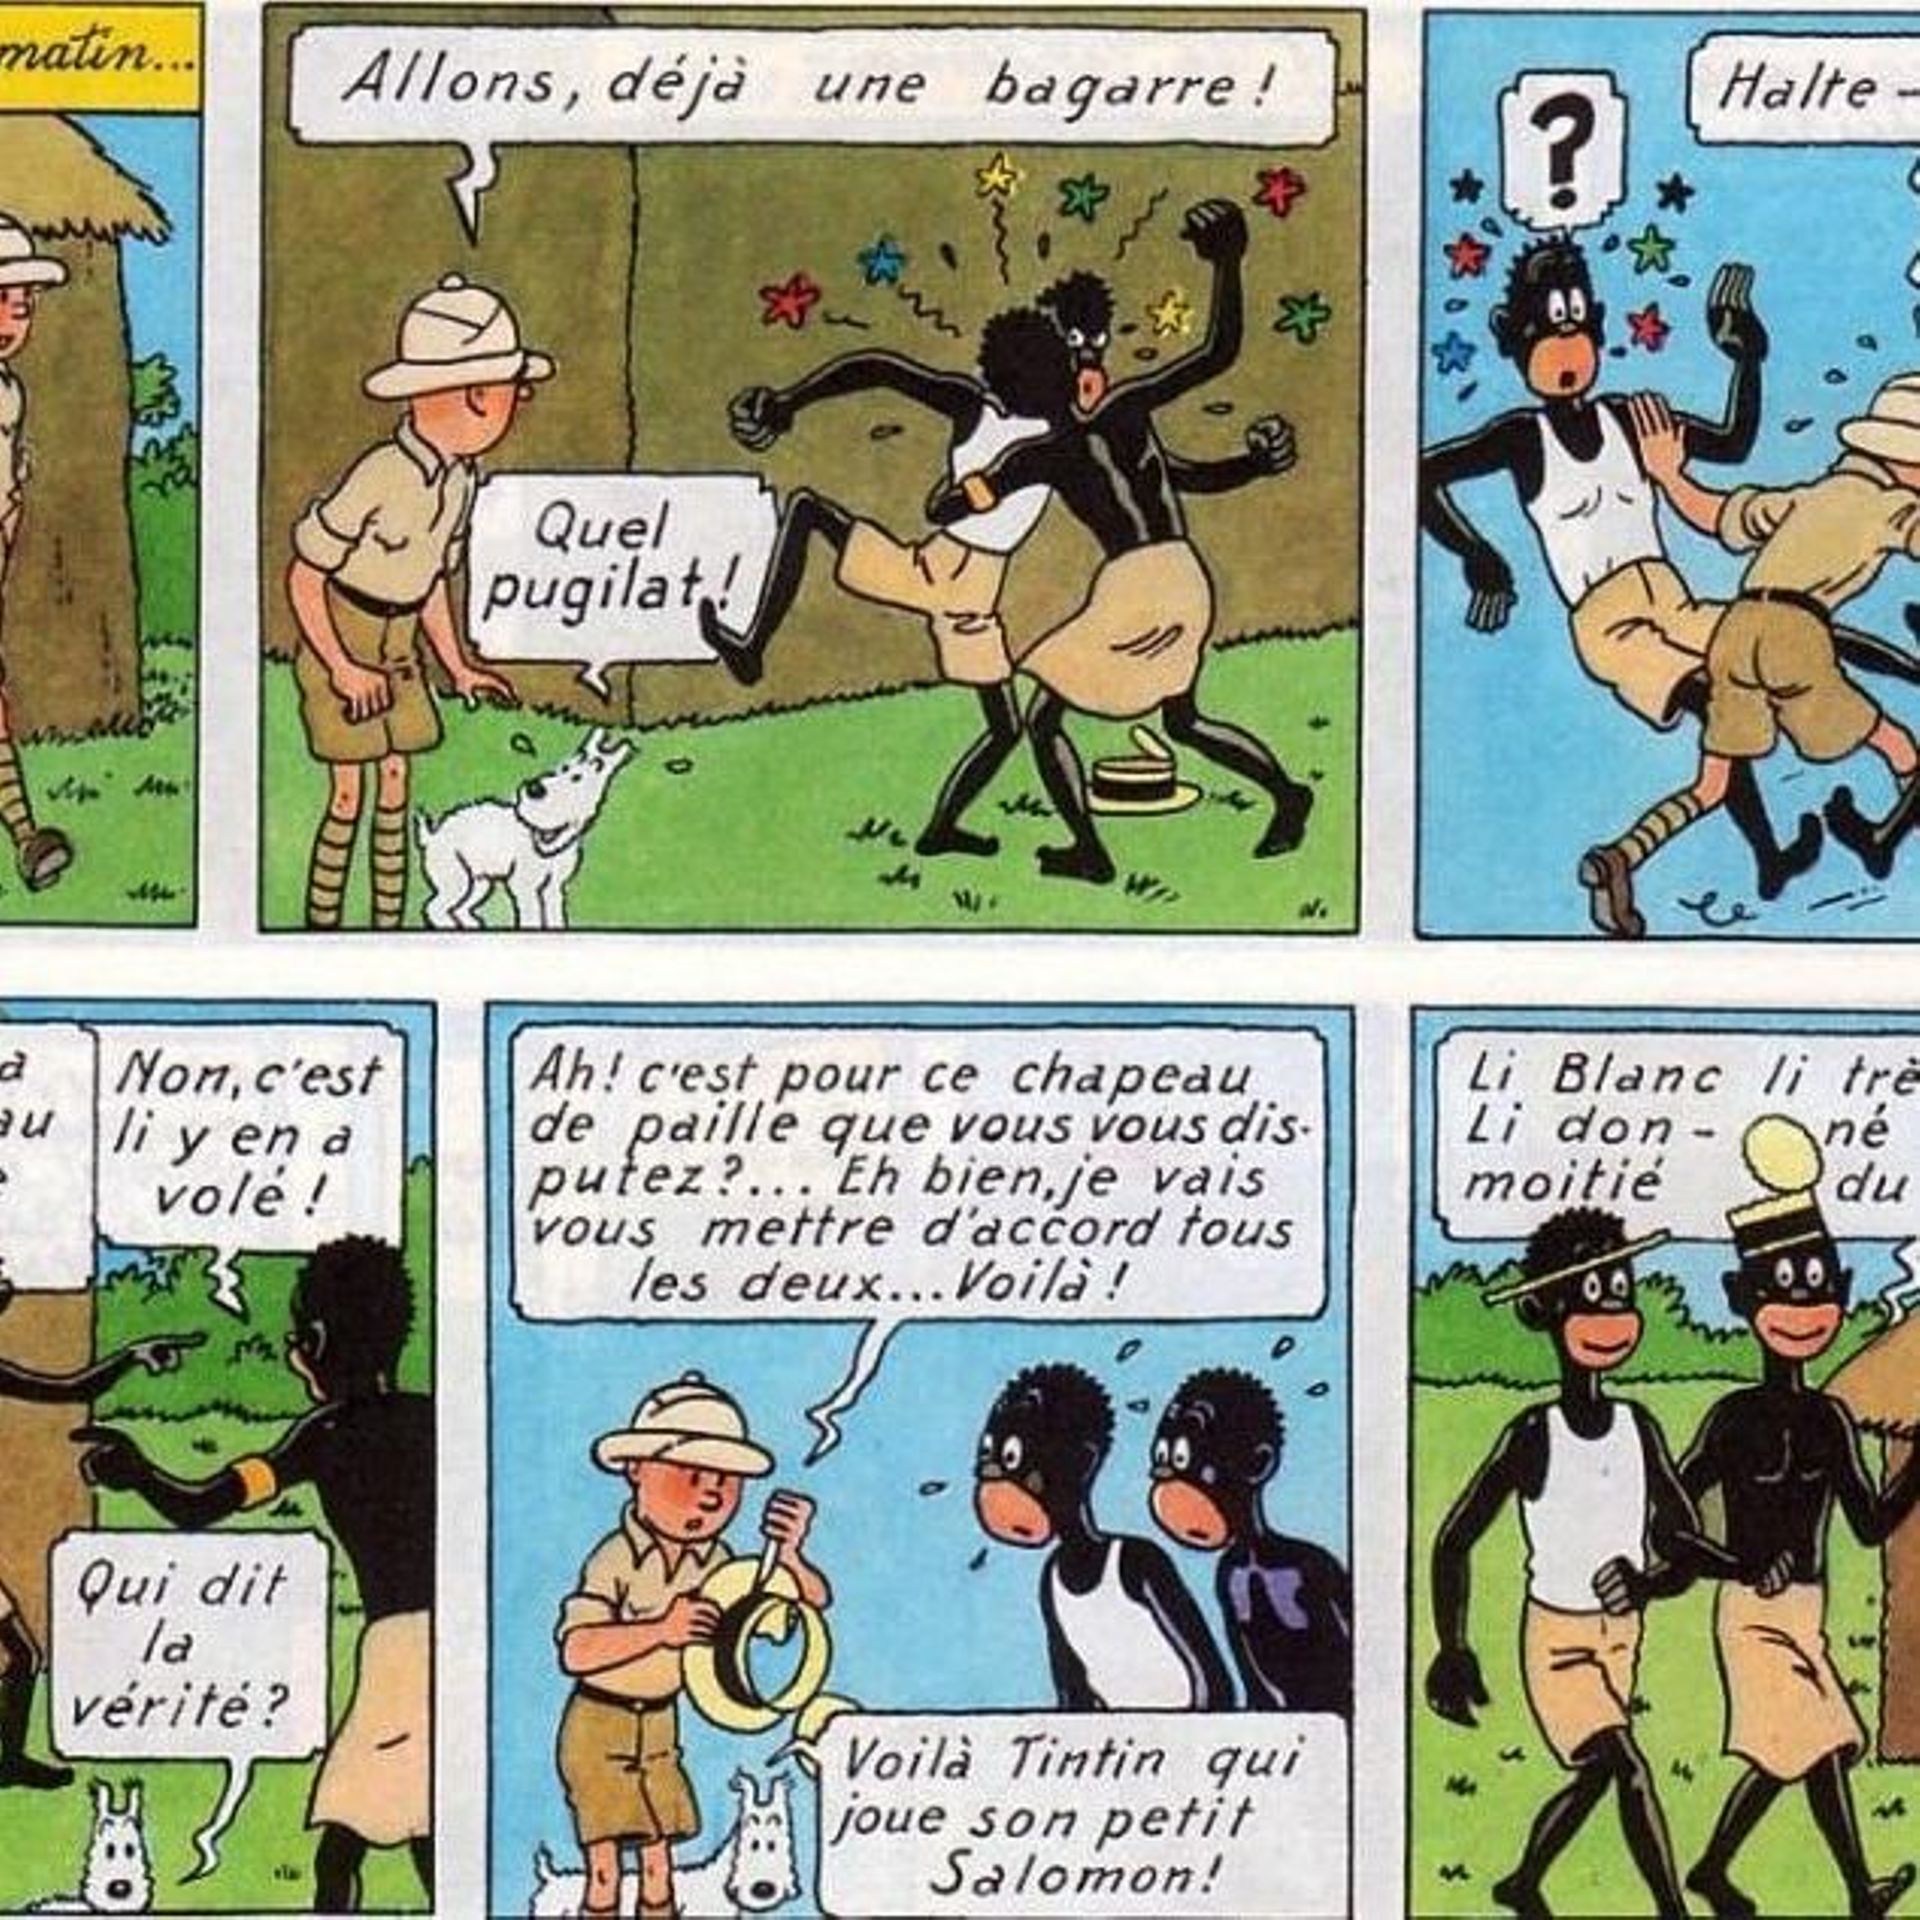 Tintin au Congo recolorisé sort en version numérique pour cause de